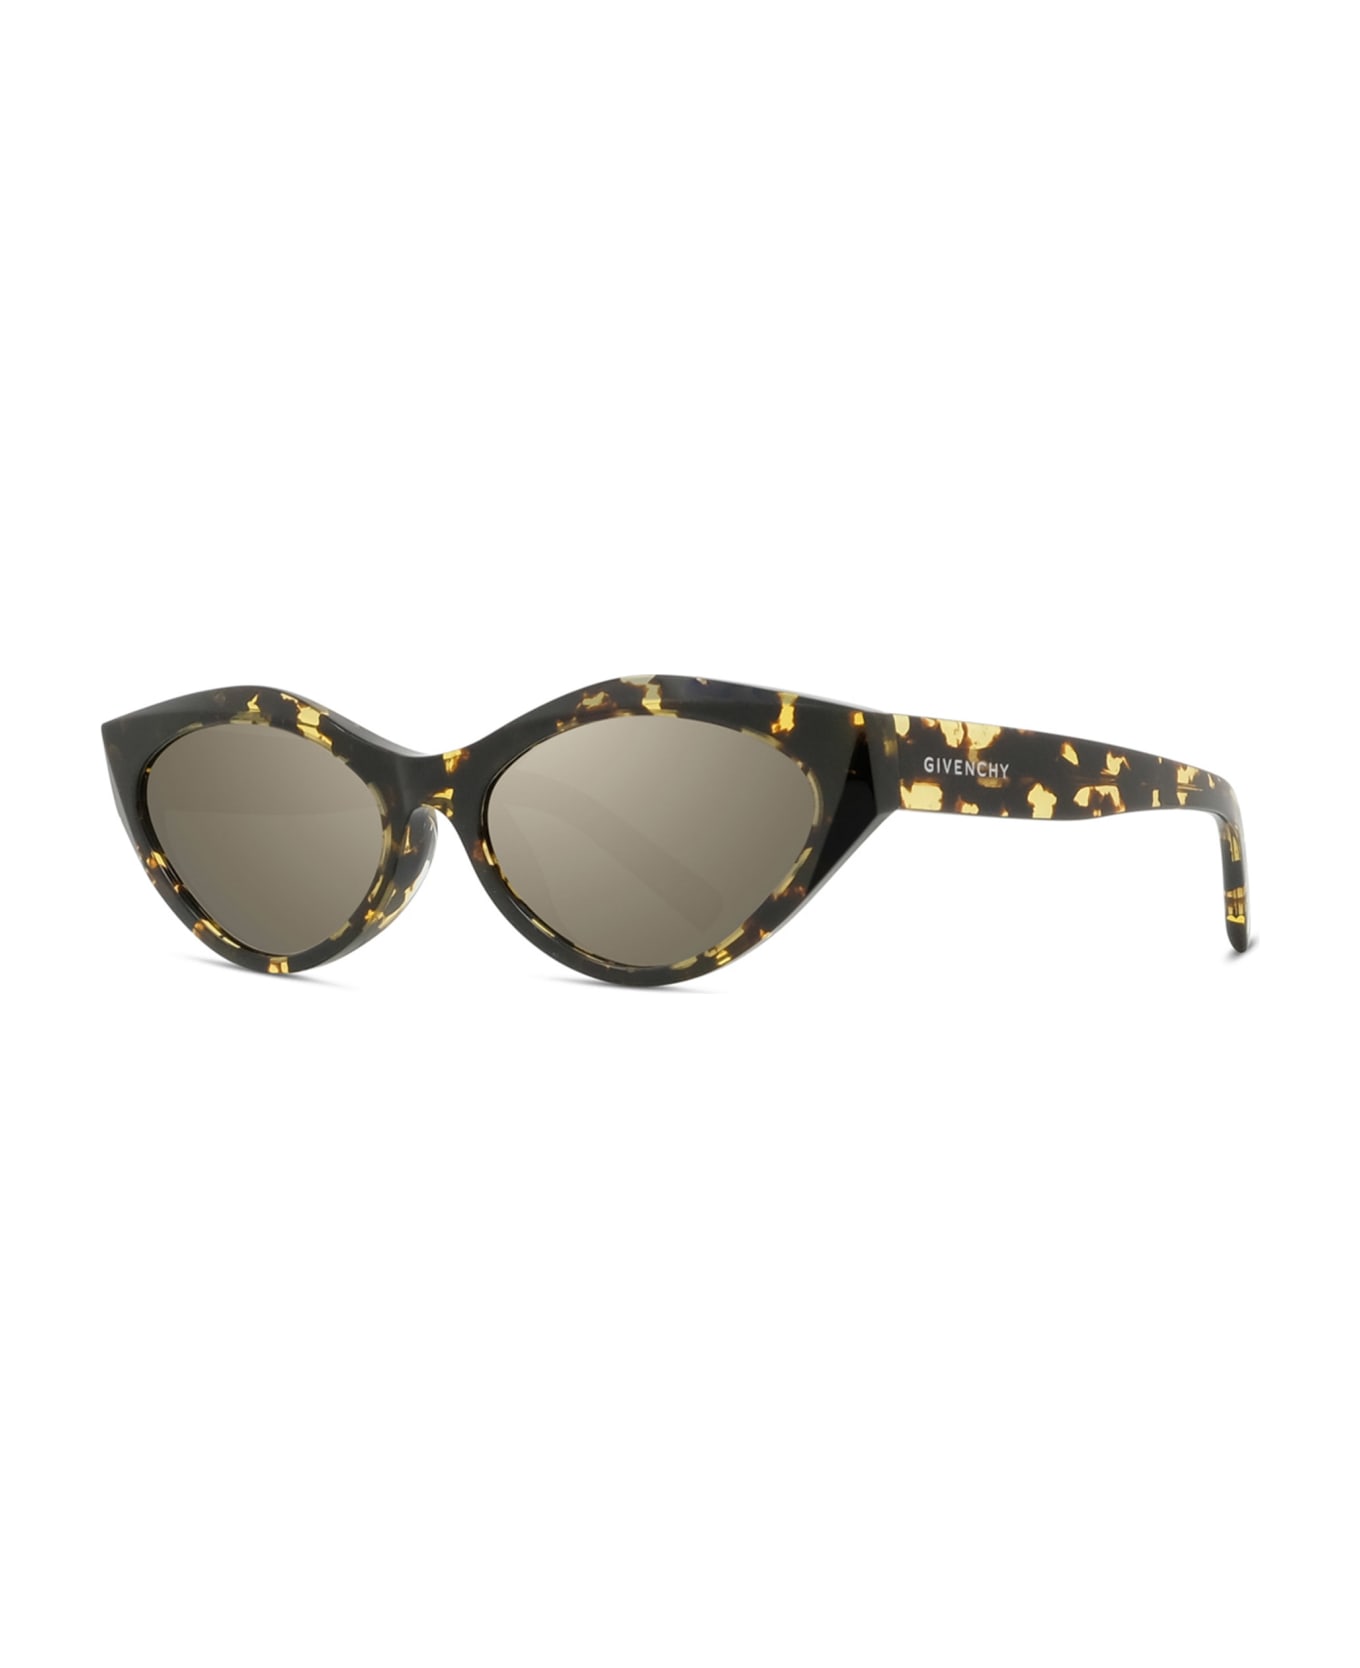 Givenchy Eyewear Gv40025u - Tortoise Sunglasses - tortoise/gold